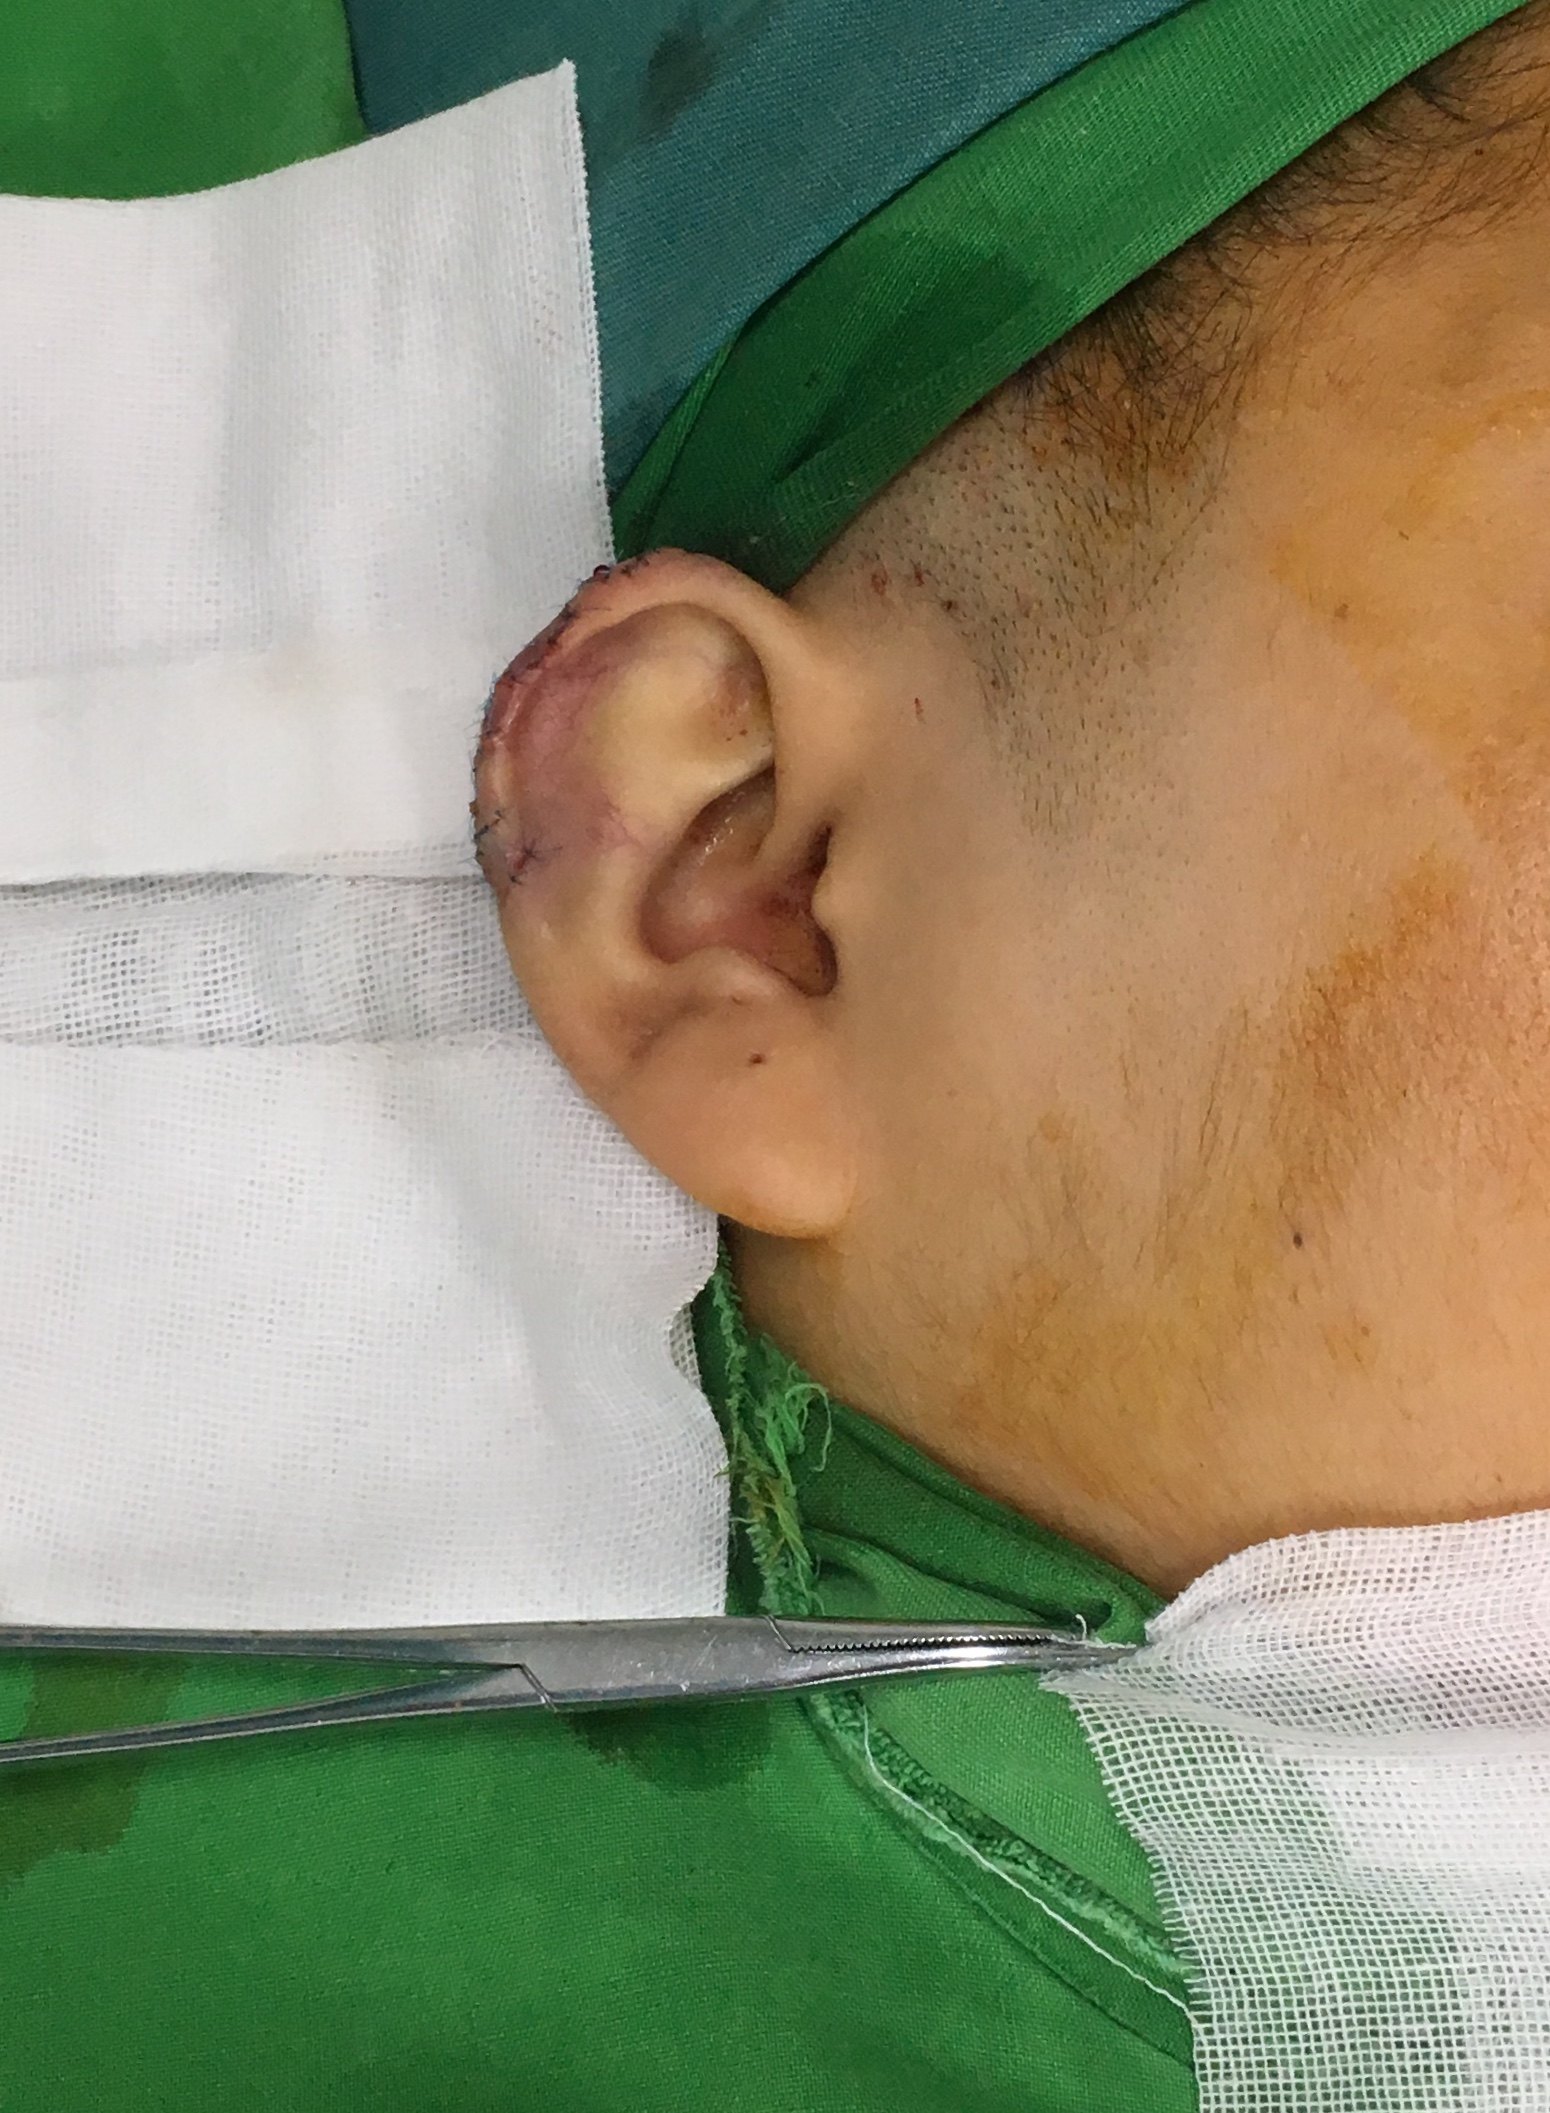 难治性双侧耳廓瘢痕疙瘩的手术治疗